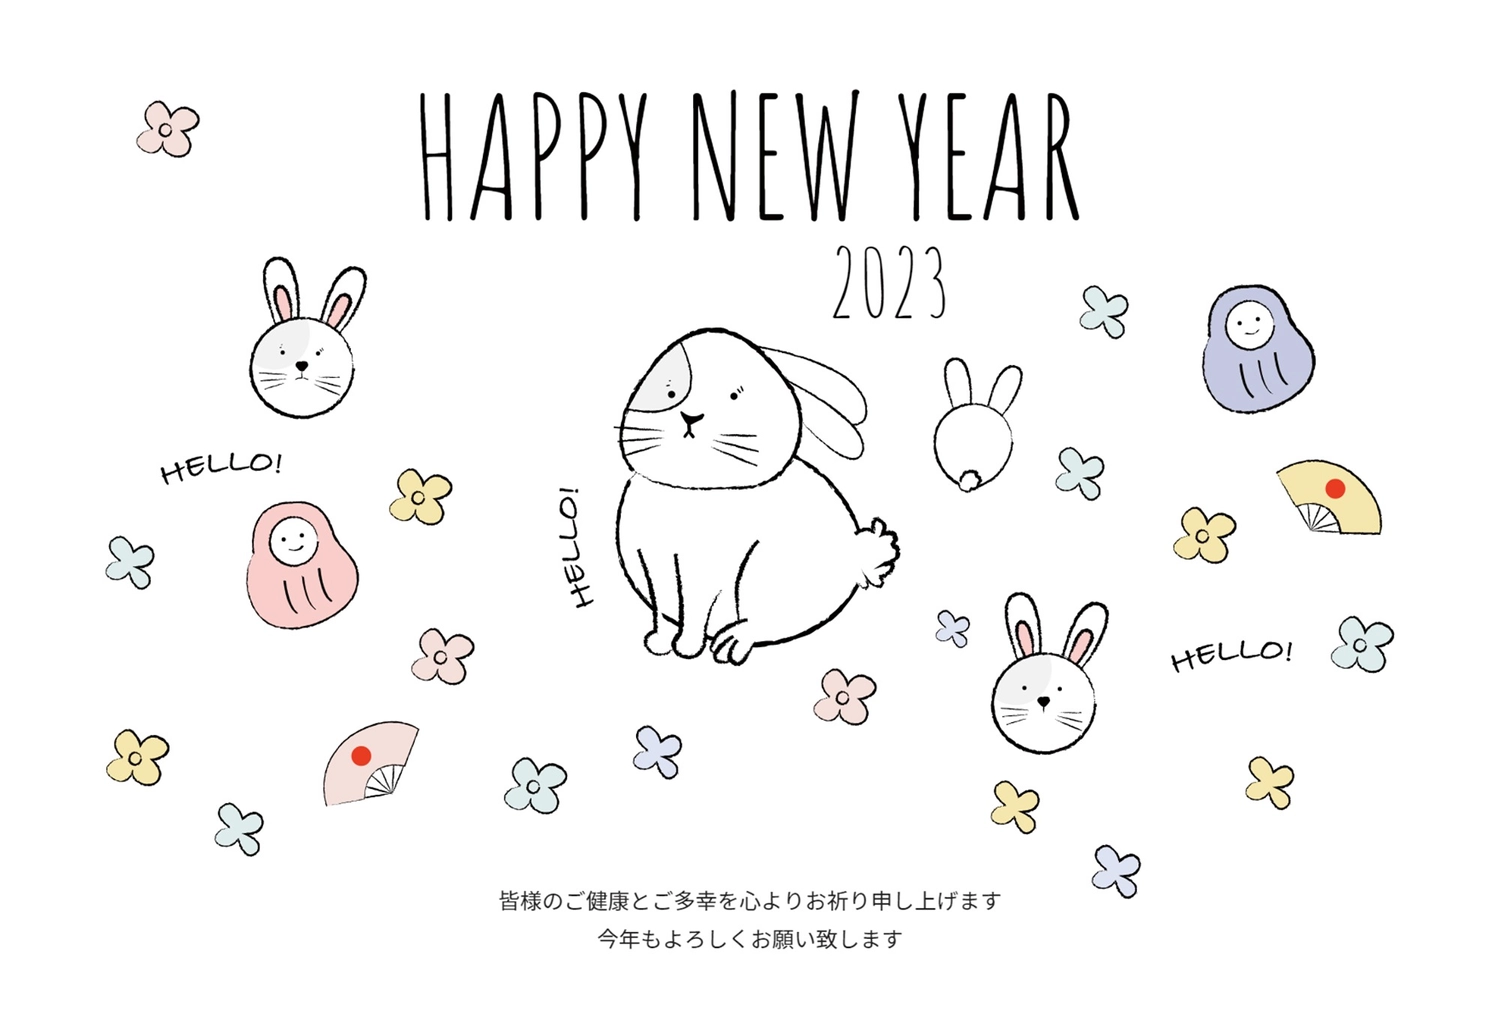 手描きうさぎイラストの年賀状, NEW YEAR, concord, White rabbit, New Year Card template